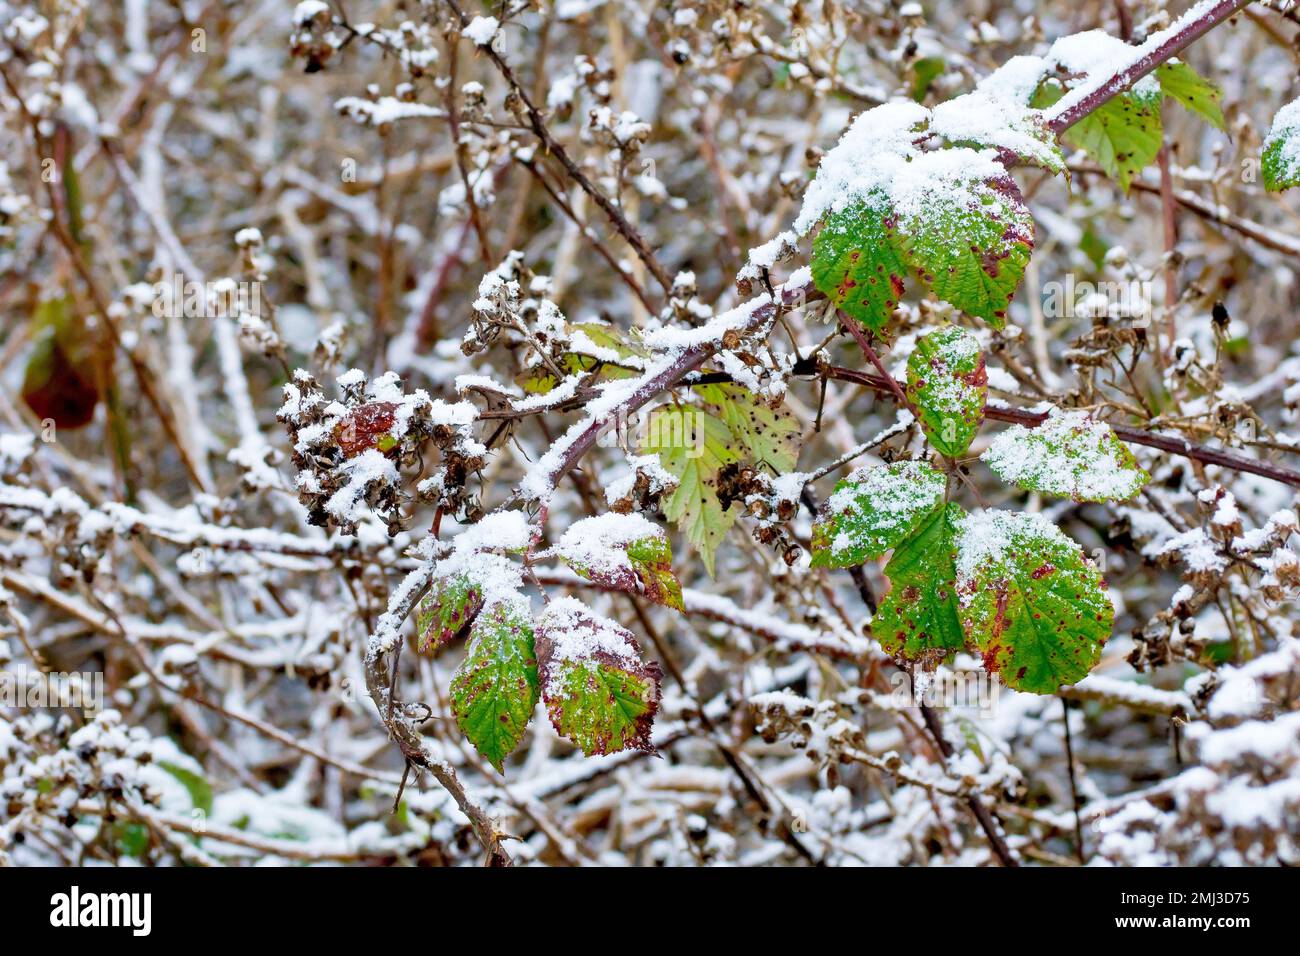 Mora o Bramble (rubus frutticosus), primo piano mostrando un lungo corridore dell'arbusto con foglie, coperto da una leggera spolveratura di neve. Foto Stock